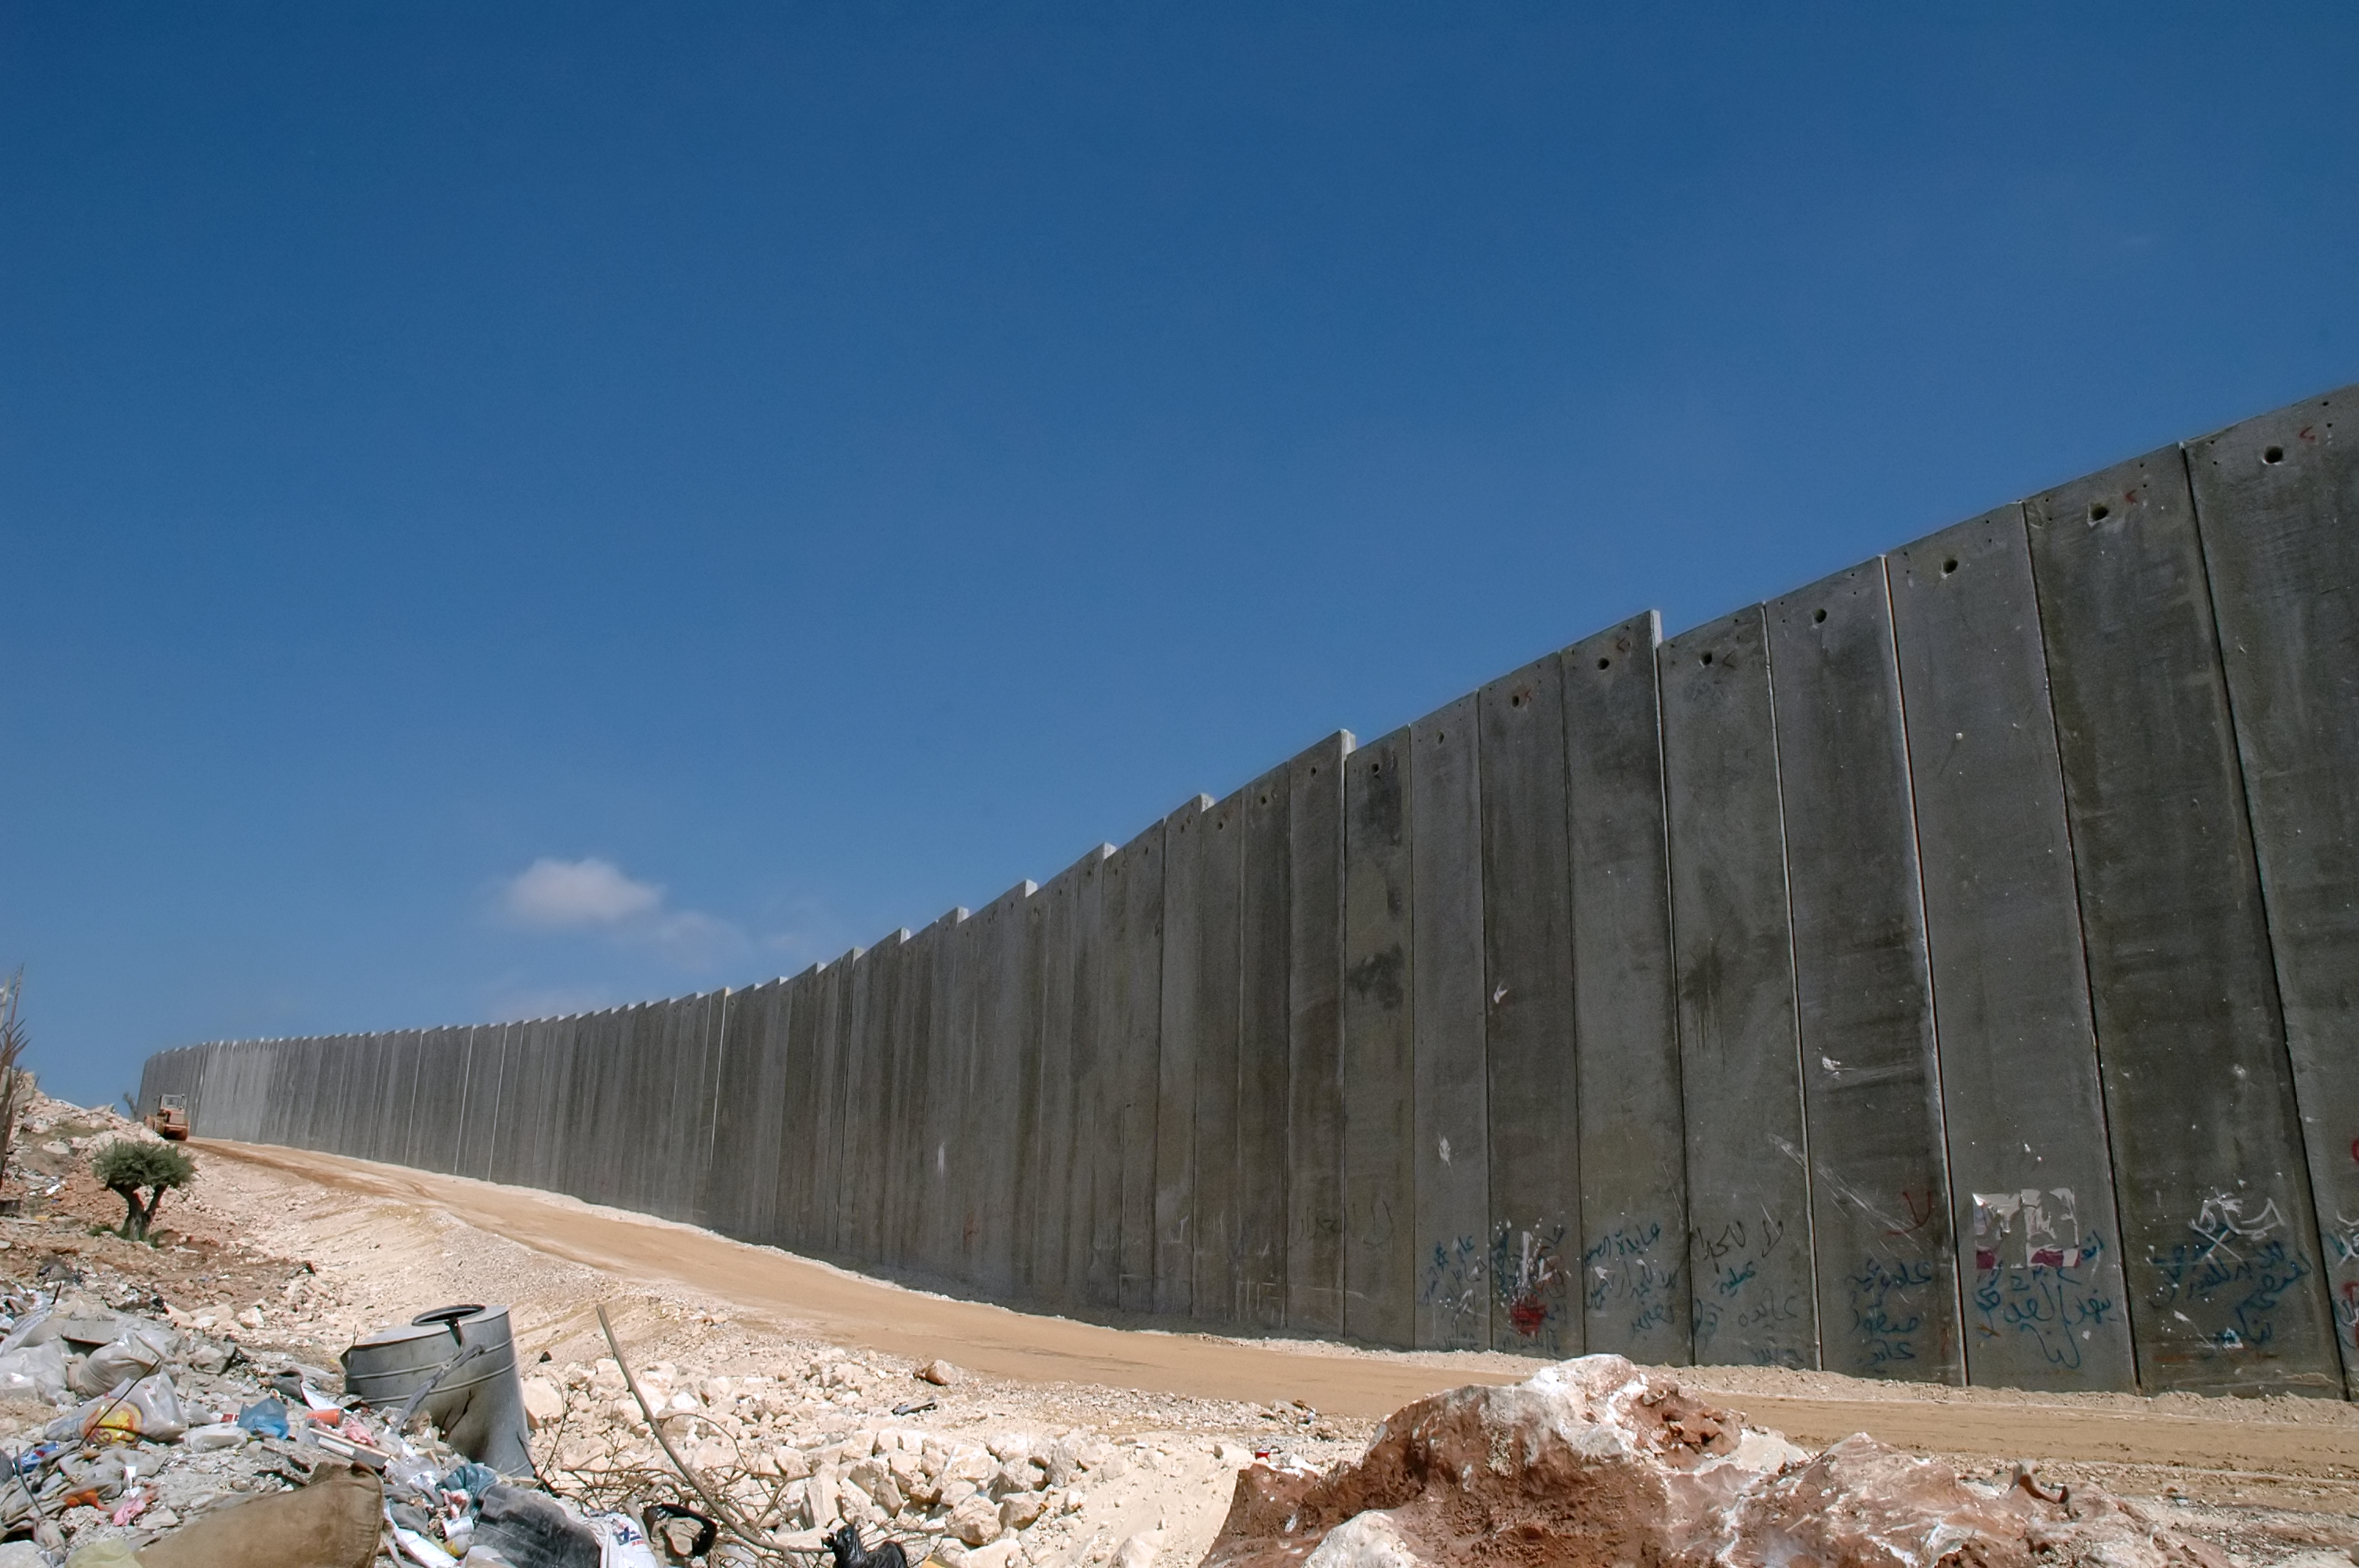 Den israelske mur opføres på Roskilde Festival